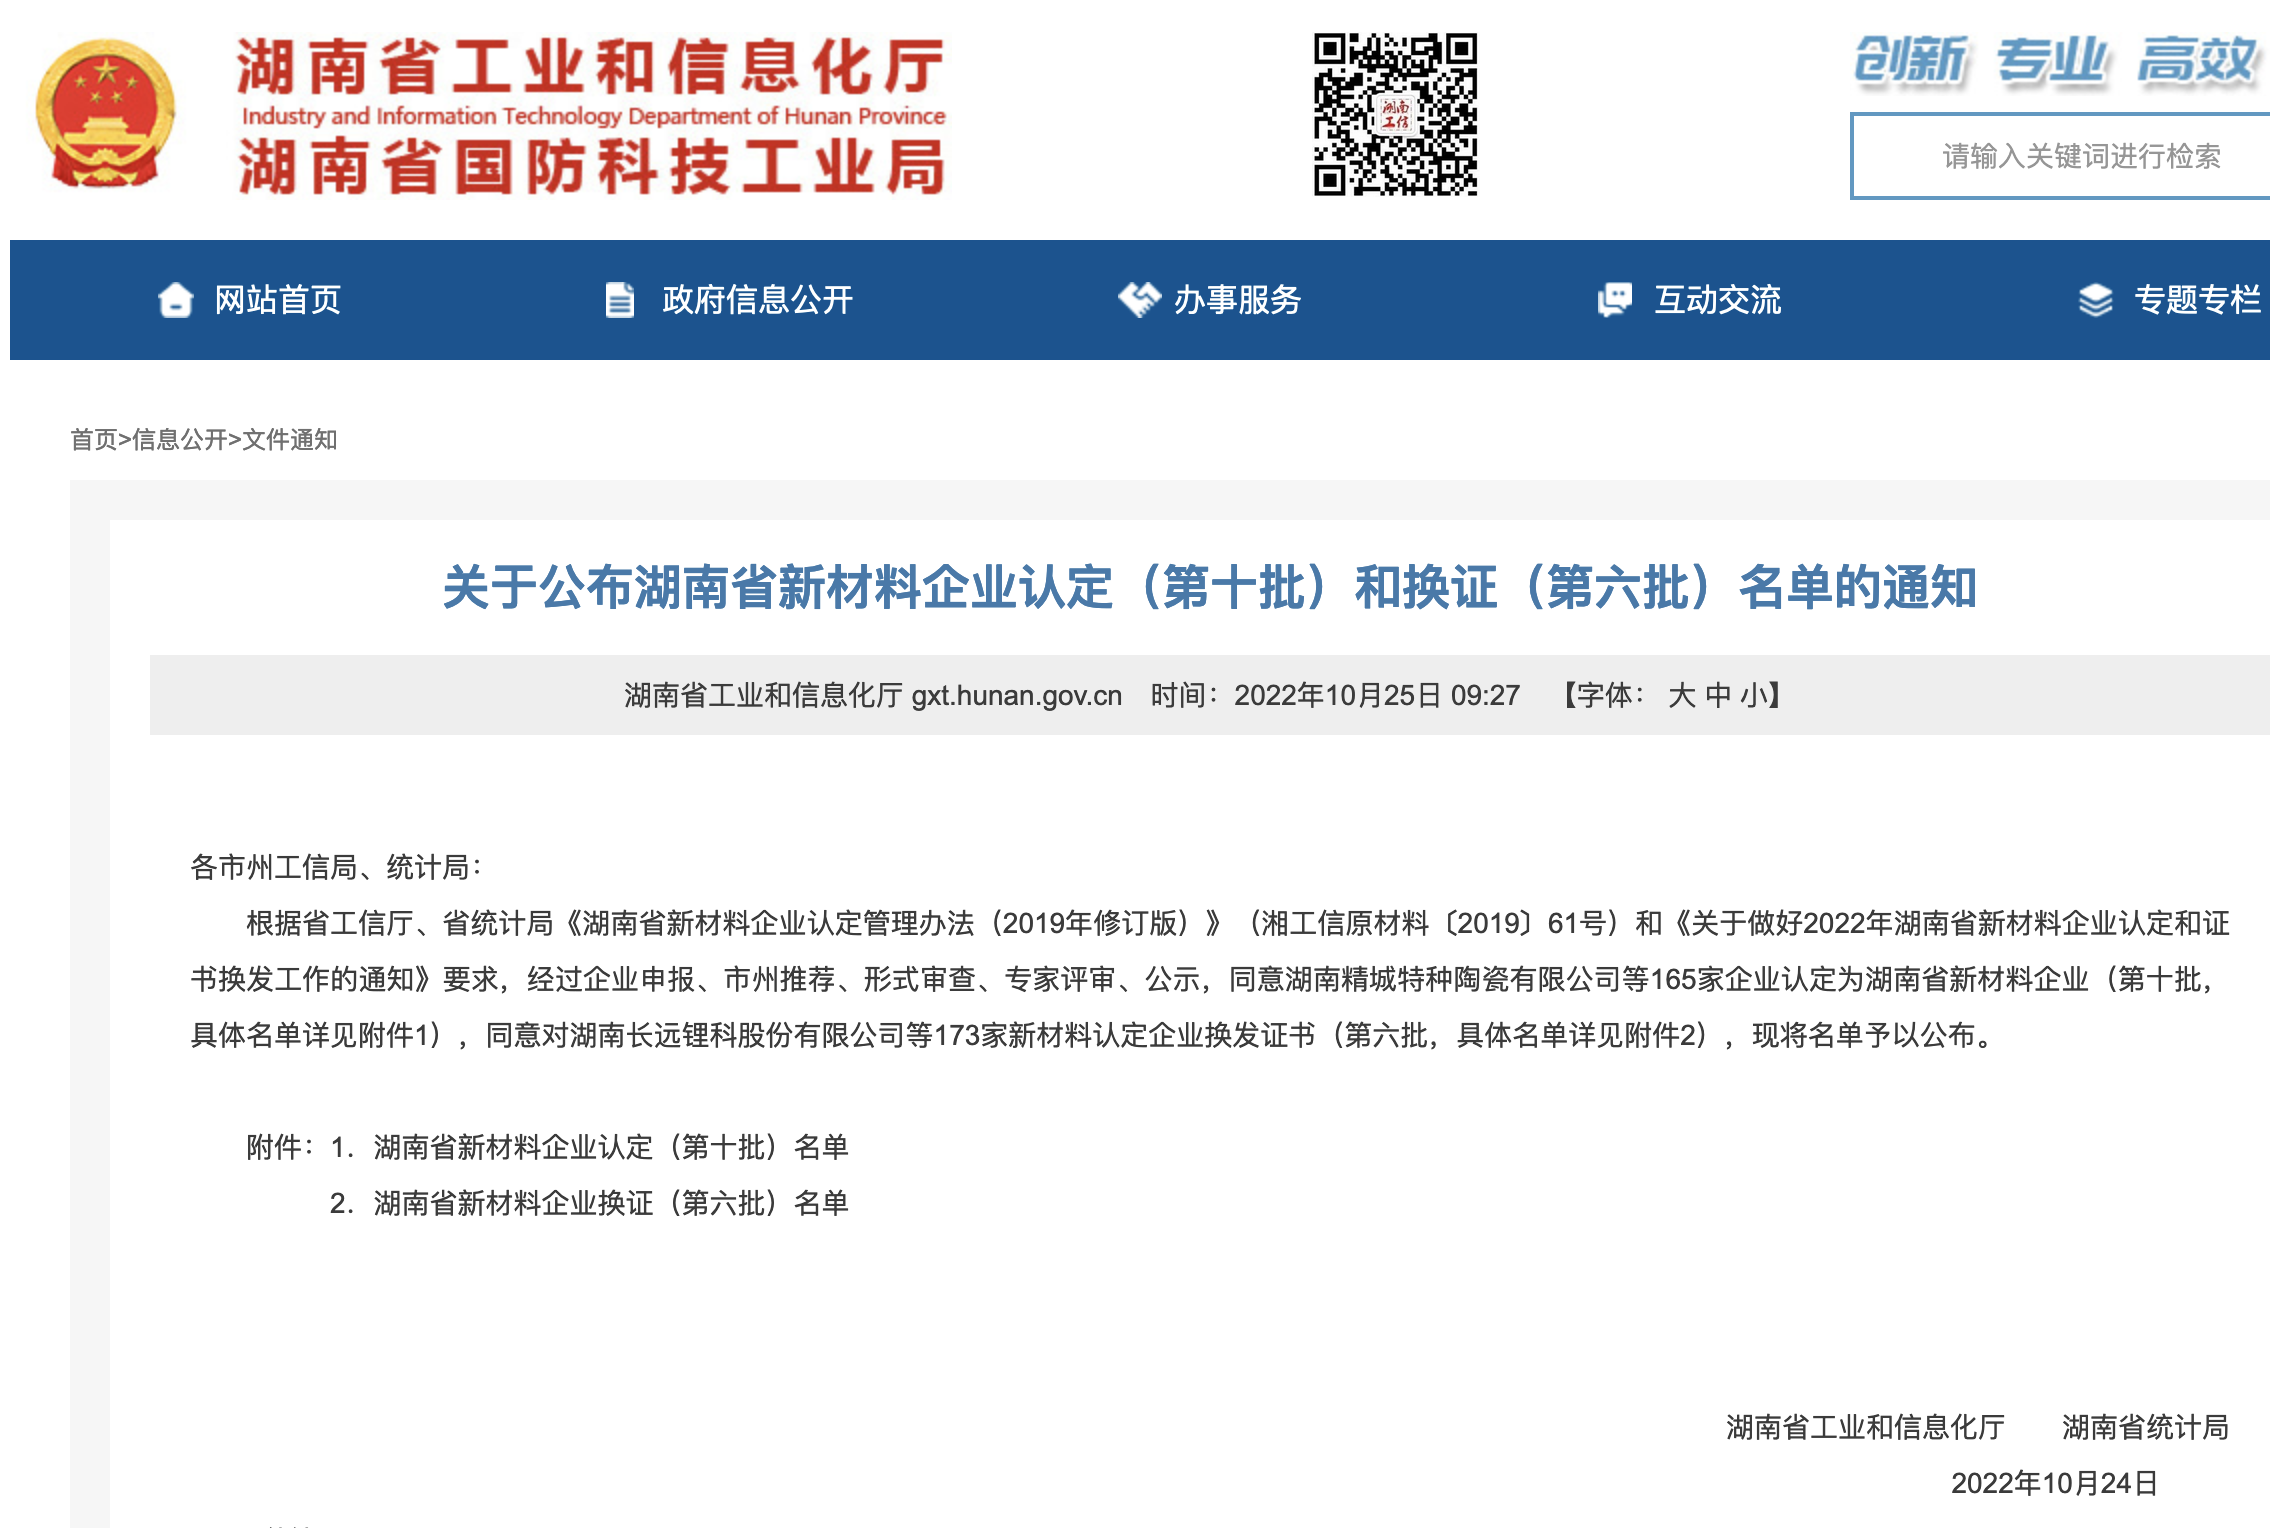 湖南时远新材料科技有限公司荣获“湖南省新材料企业认定”